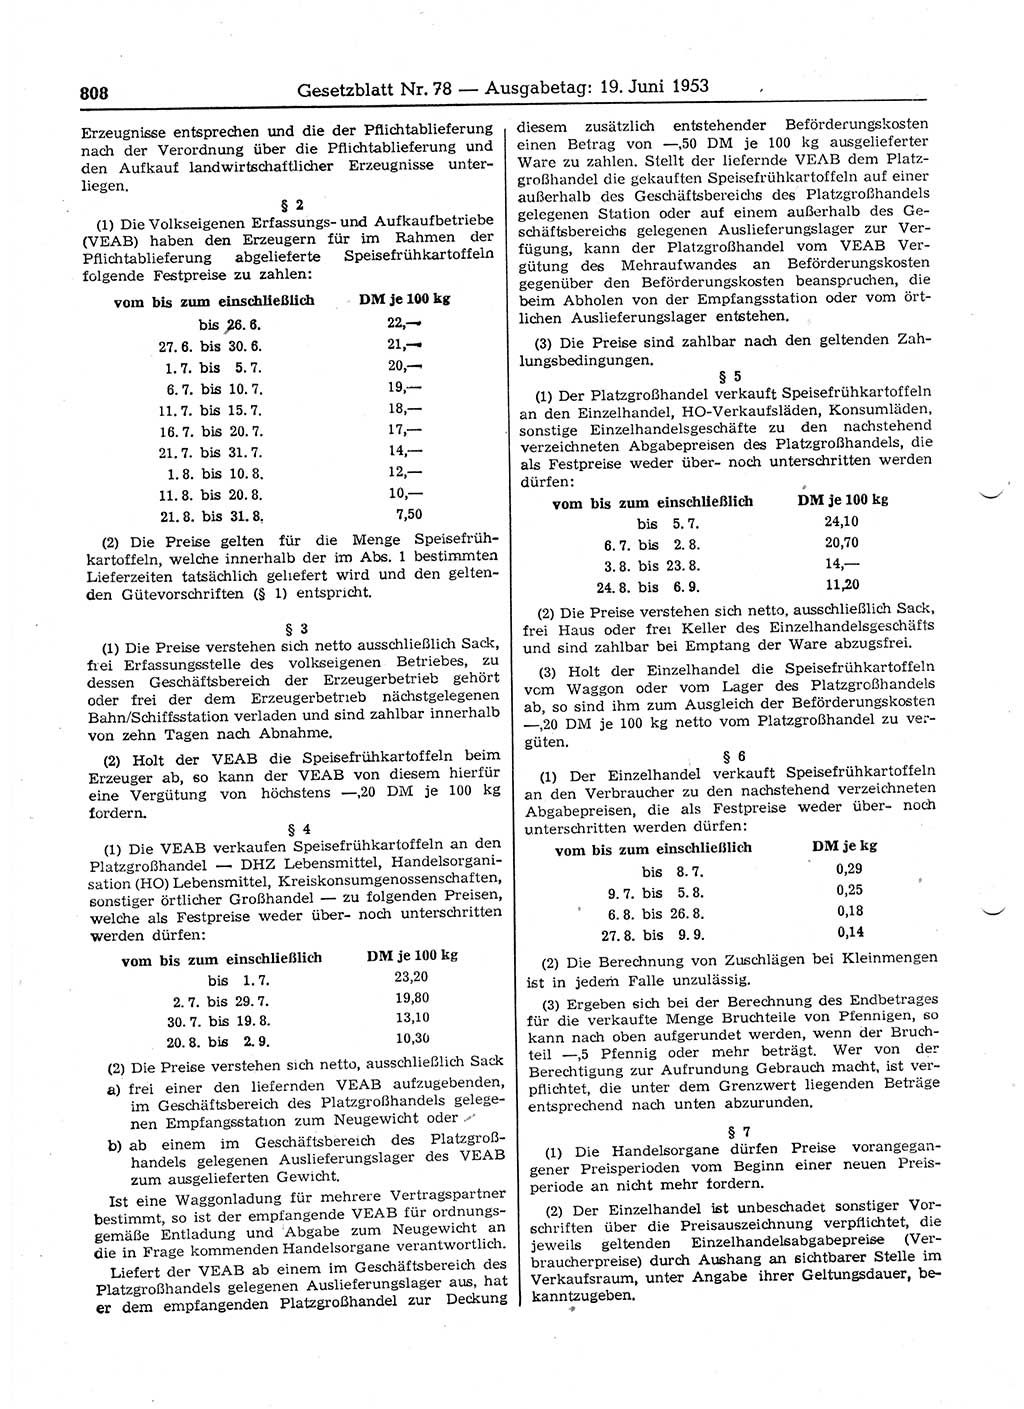 Gesetzblatt (GBl.) der Deutschen Demokratischen Republik (DDR) 1953, Seite 808 (GBl. DDR 1953, S. 808)